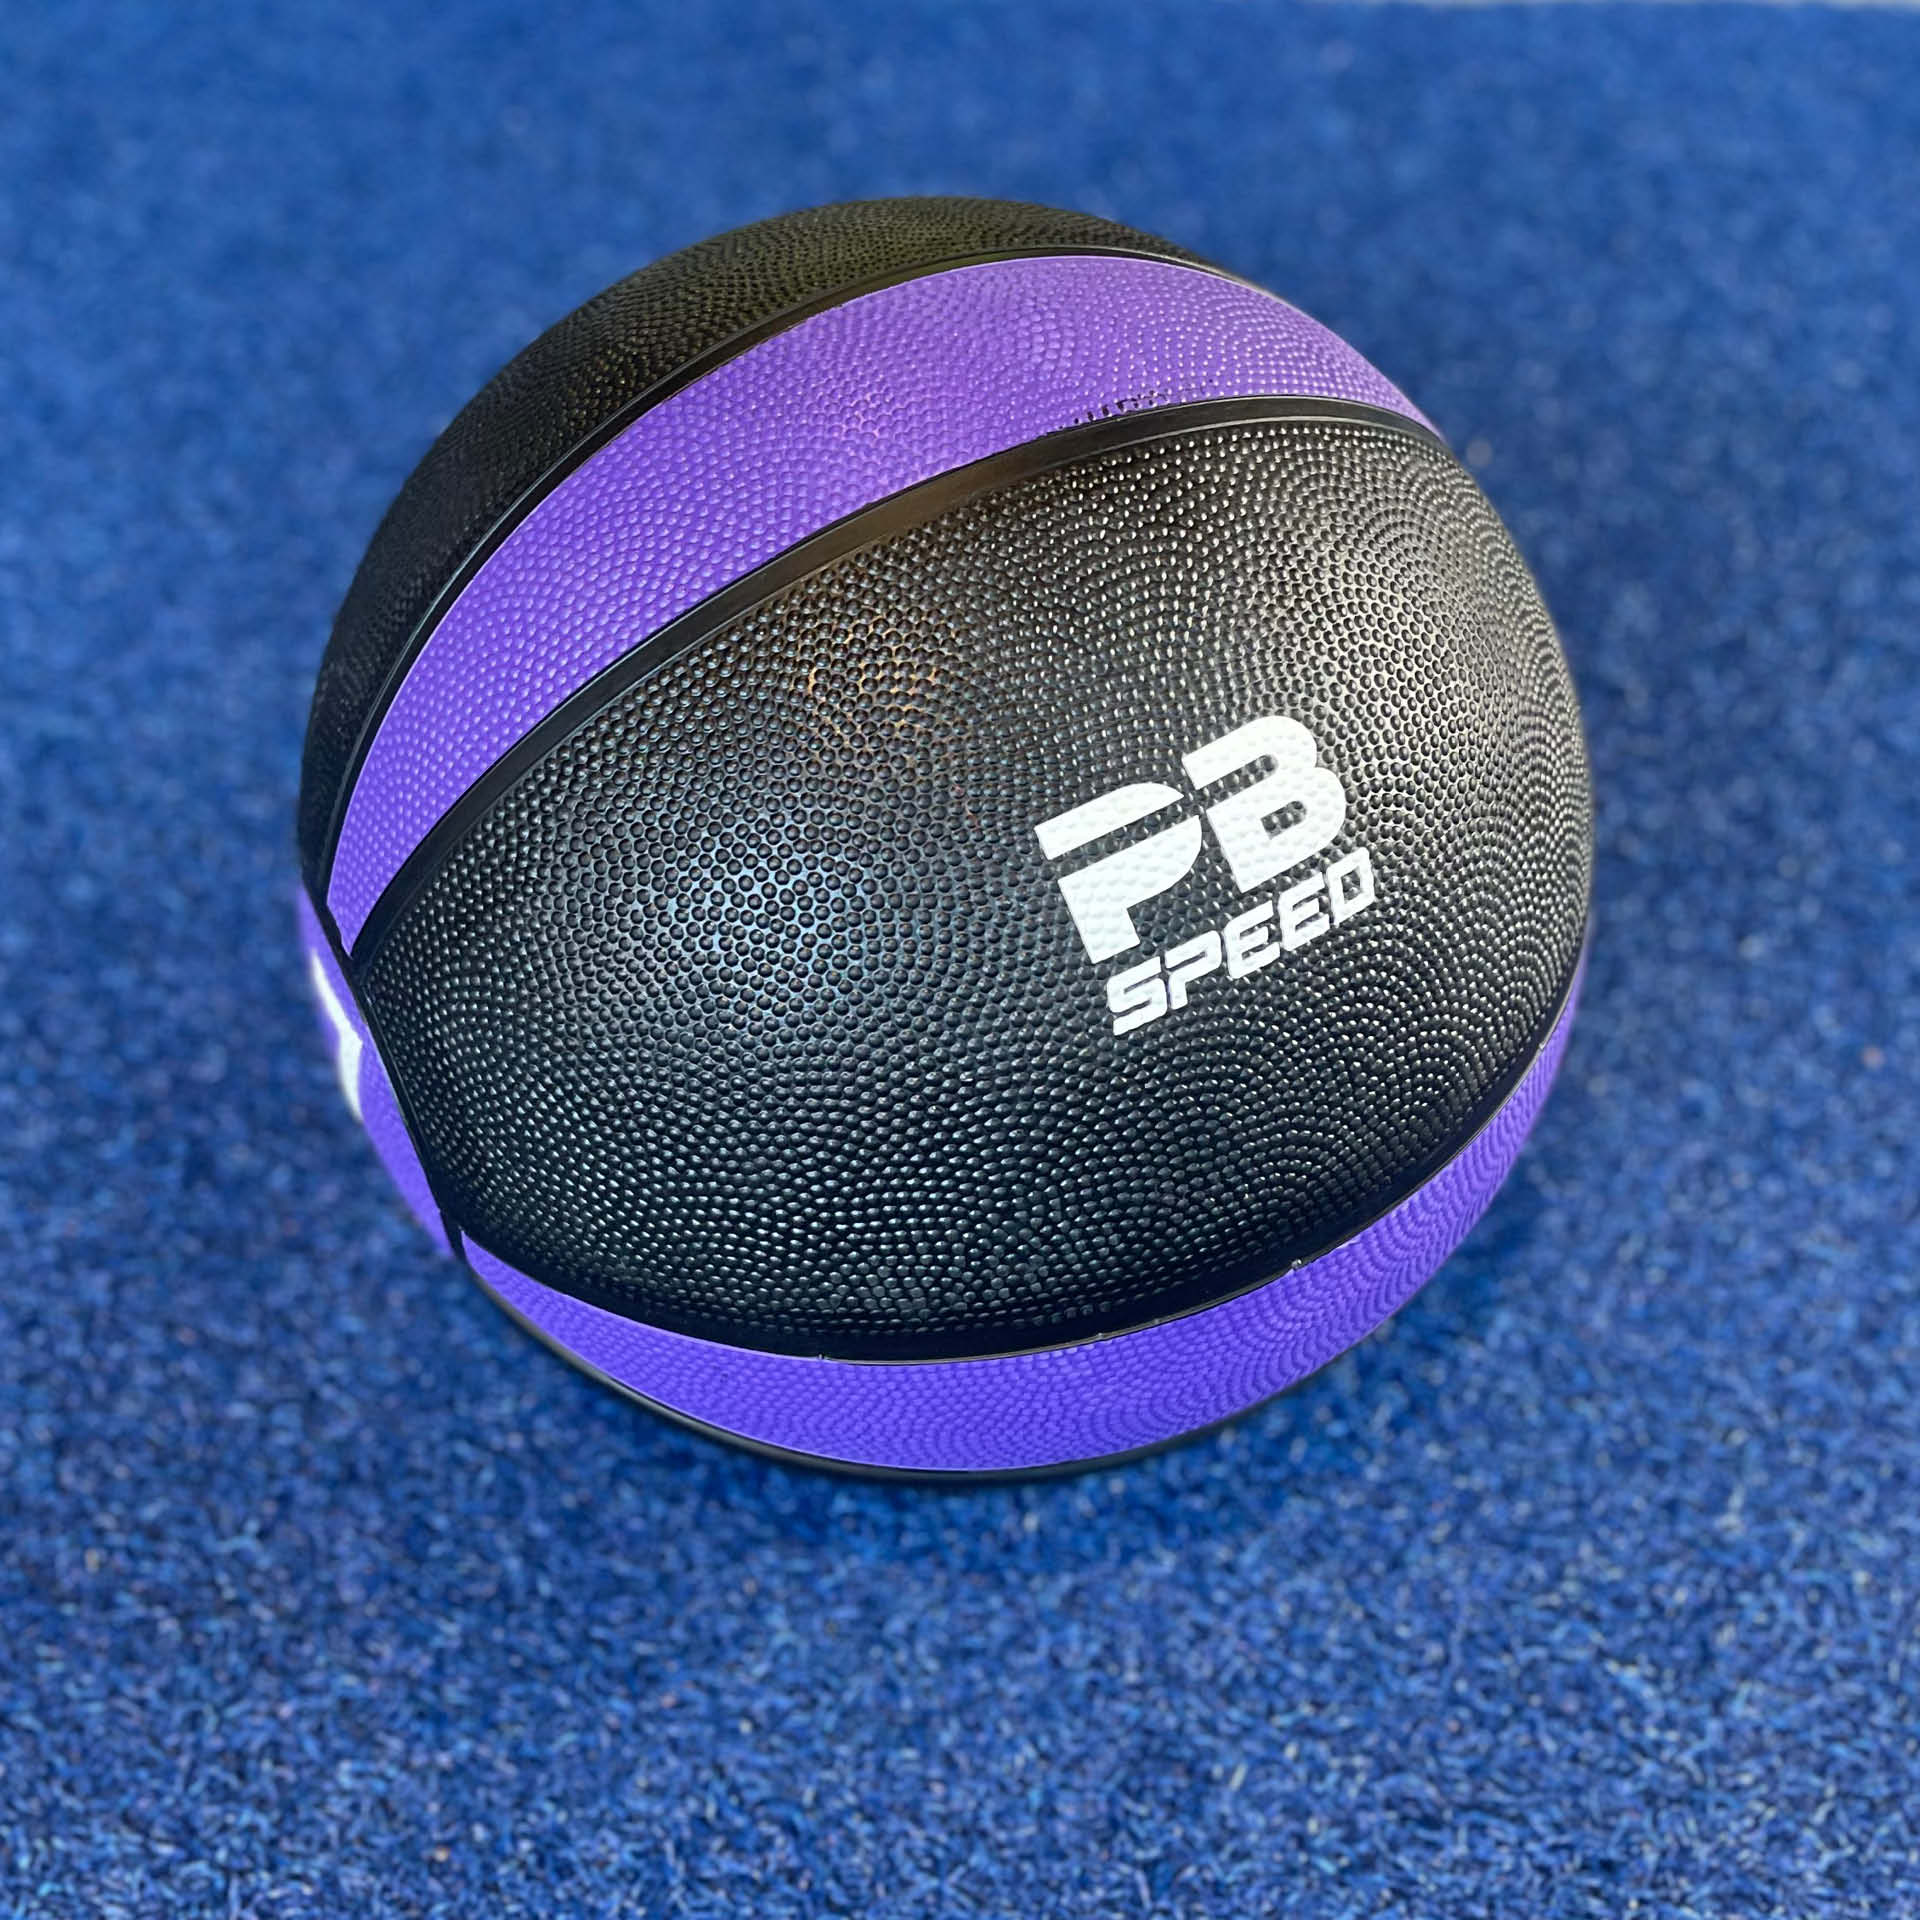 PB Speed Medizinball 7 kg